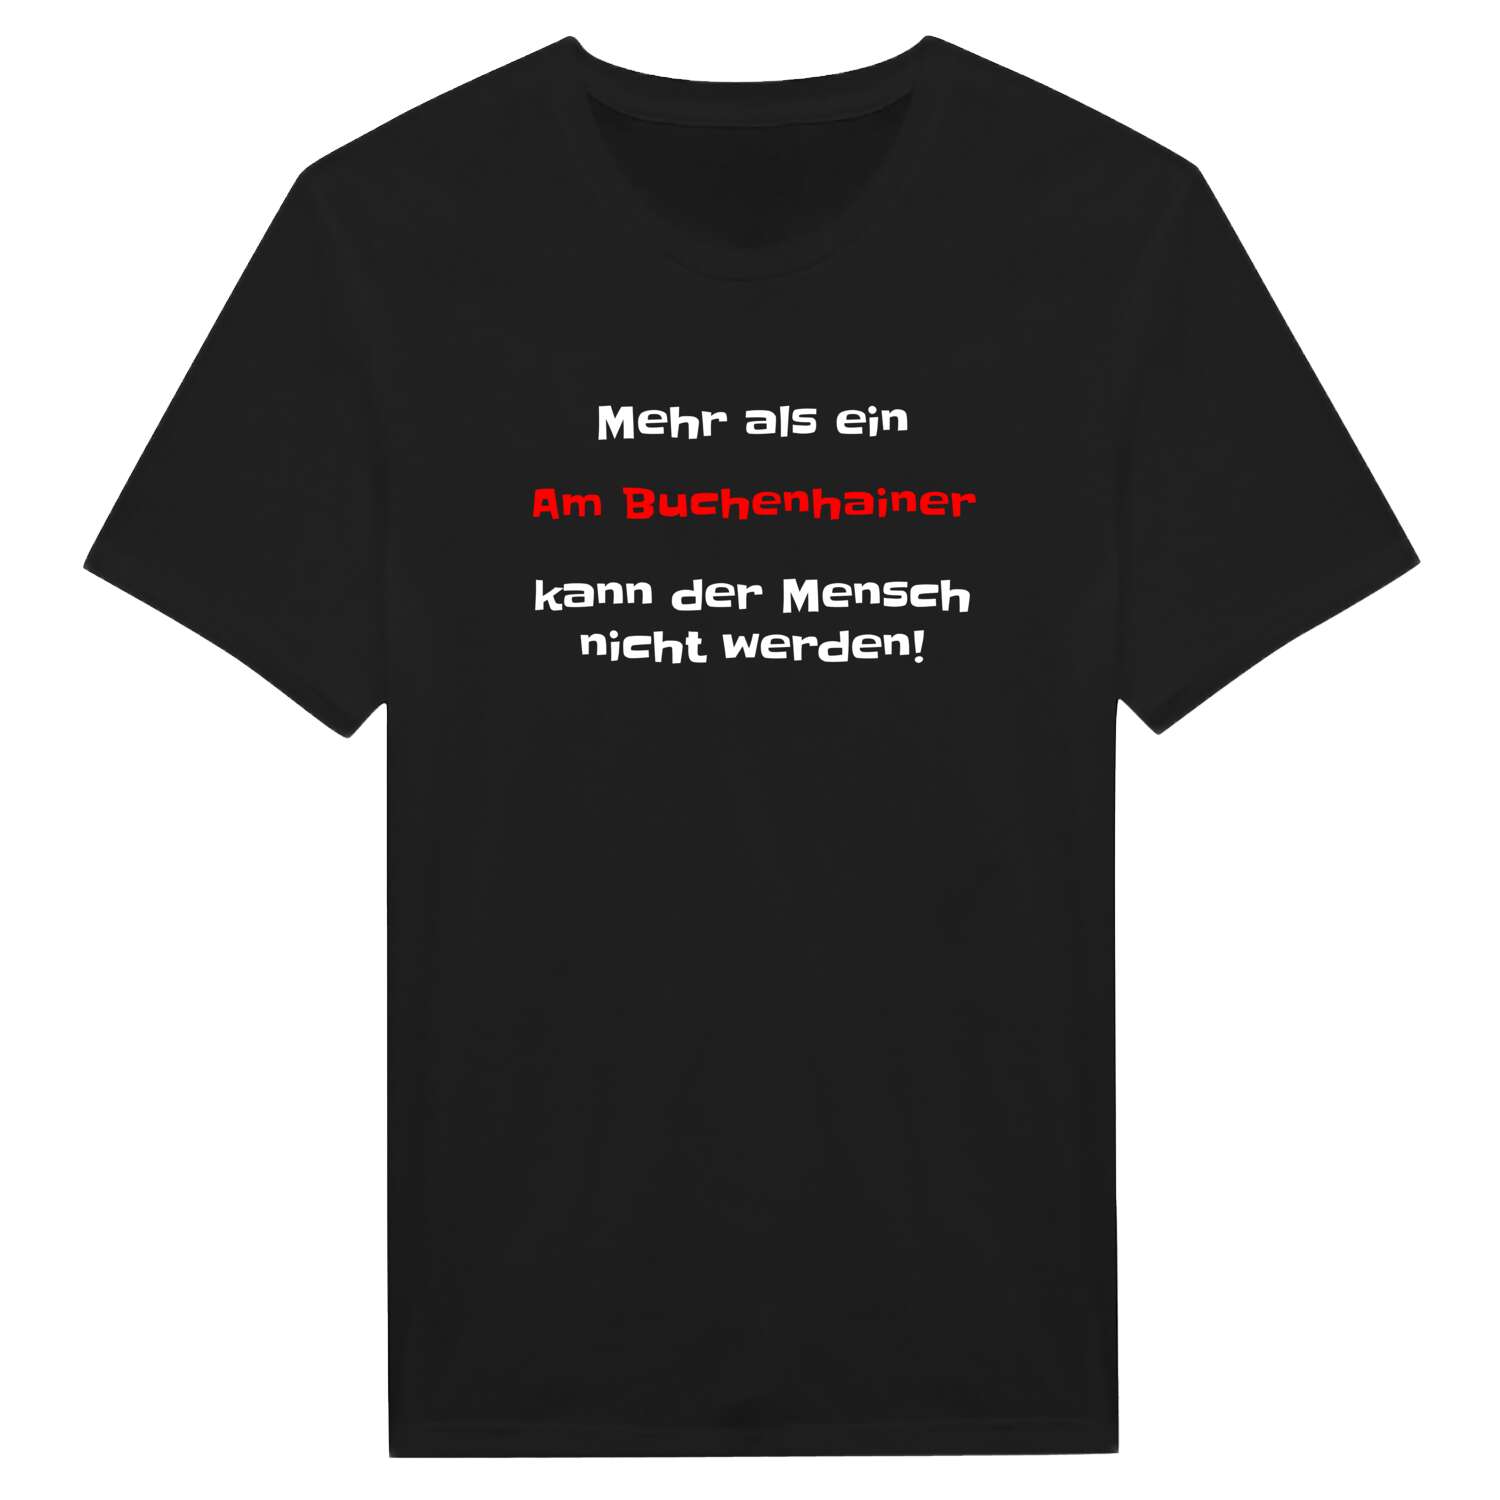 Am Buchenhain T-Shirt »Mehr als ein«